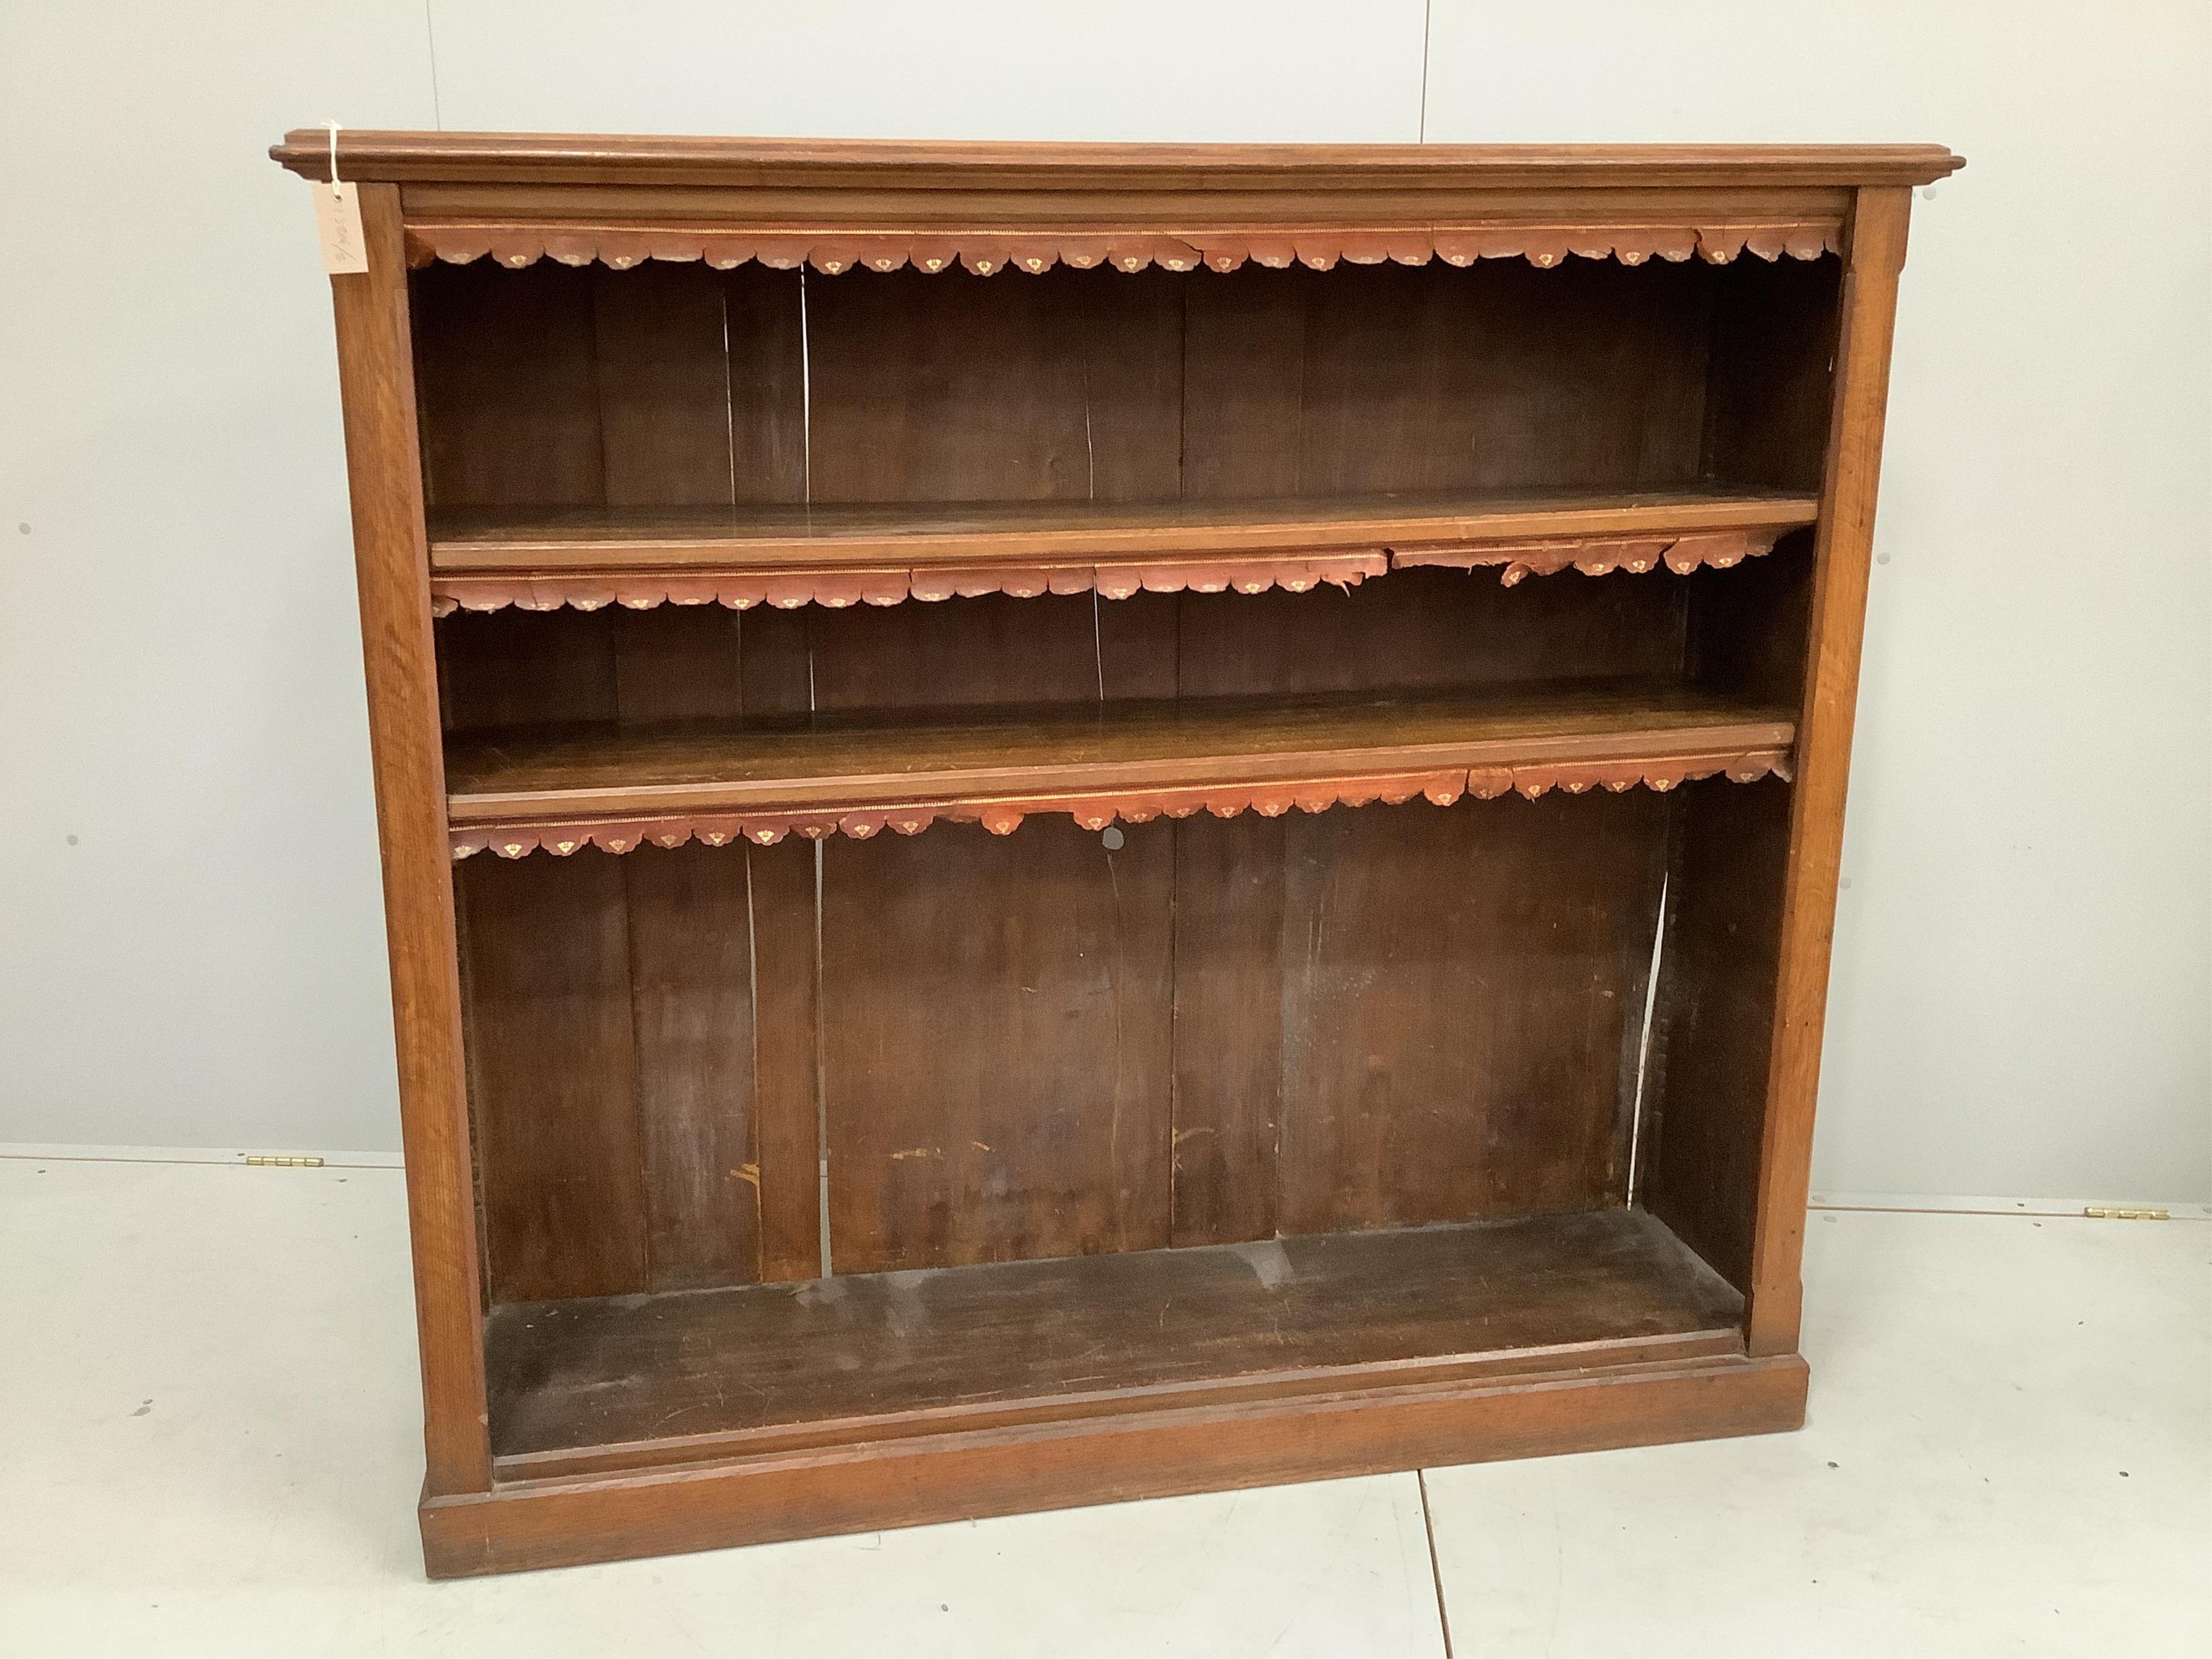 An Edwardian oak open bookcase, width 152cm, depth 40cm, height 137cm